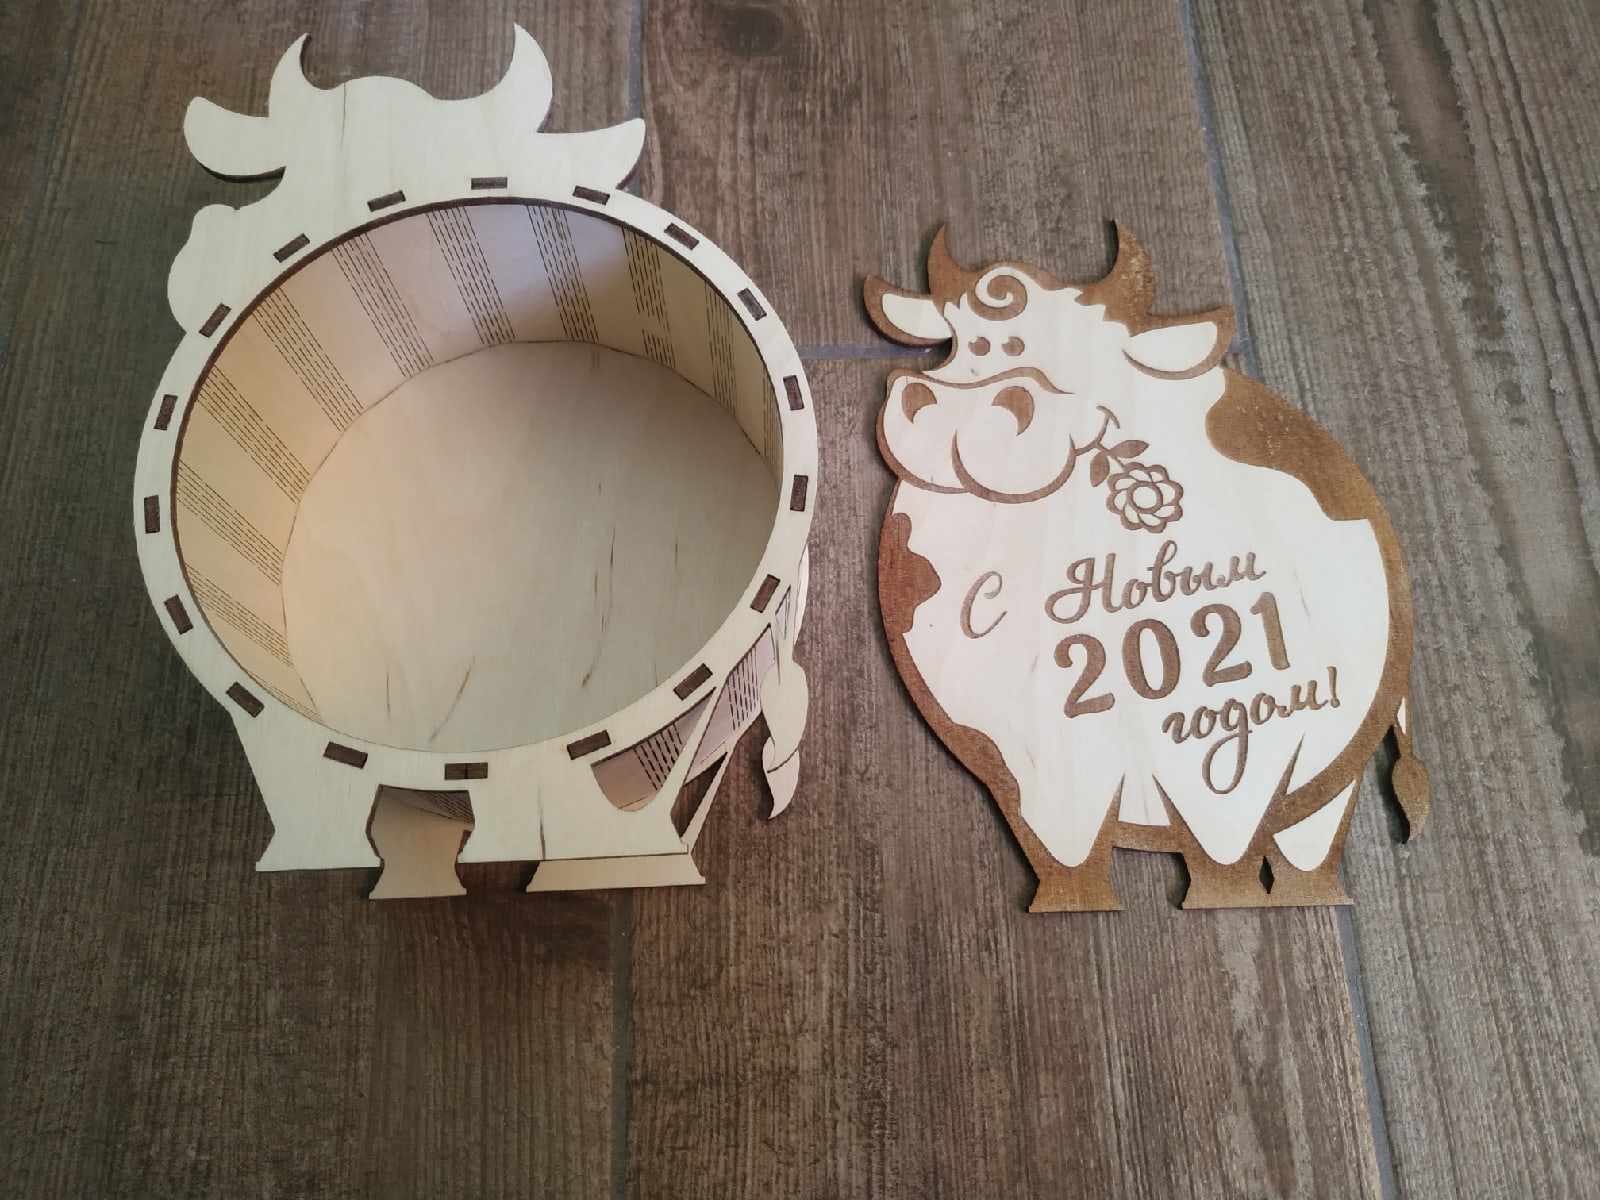 激光切割公牛 2021 年新年礼盒 除夕盒